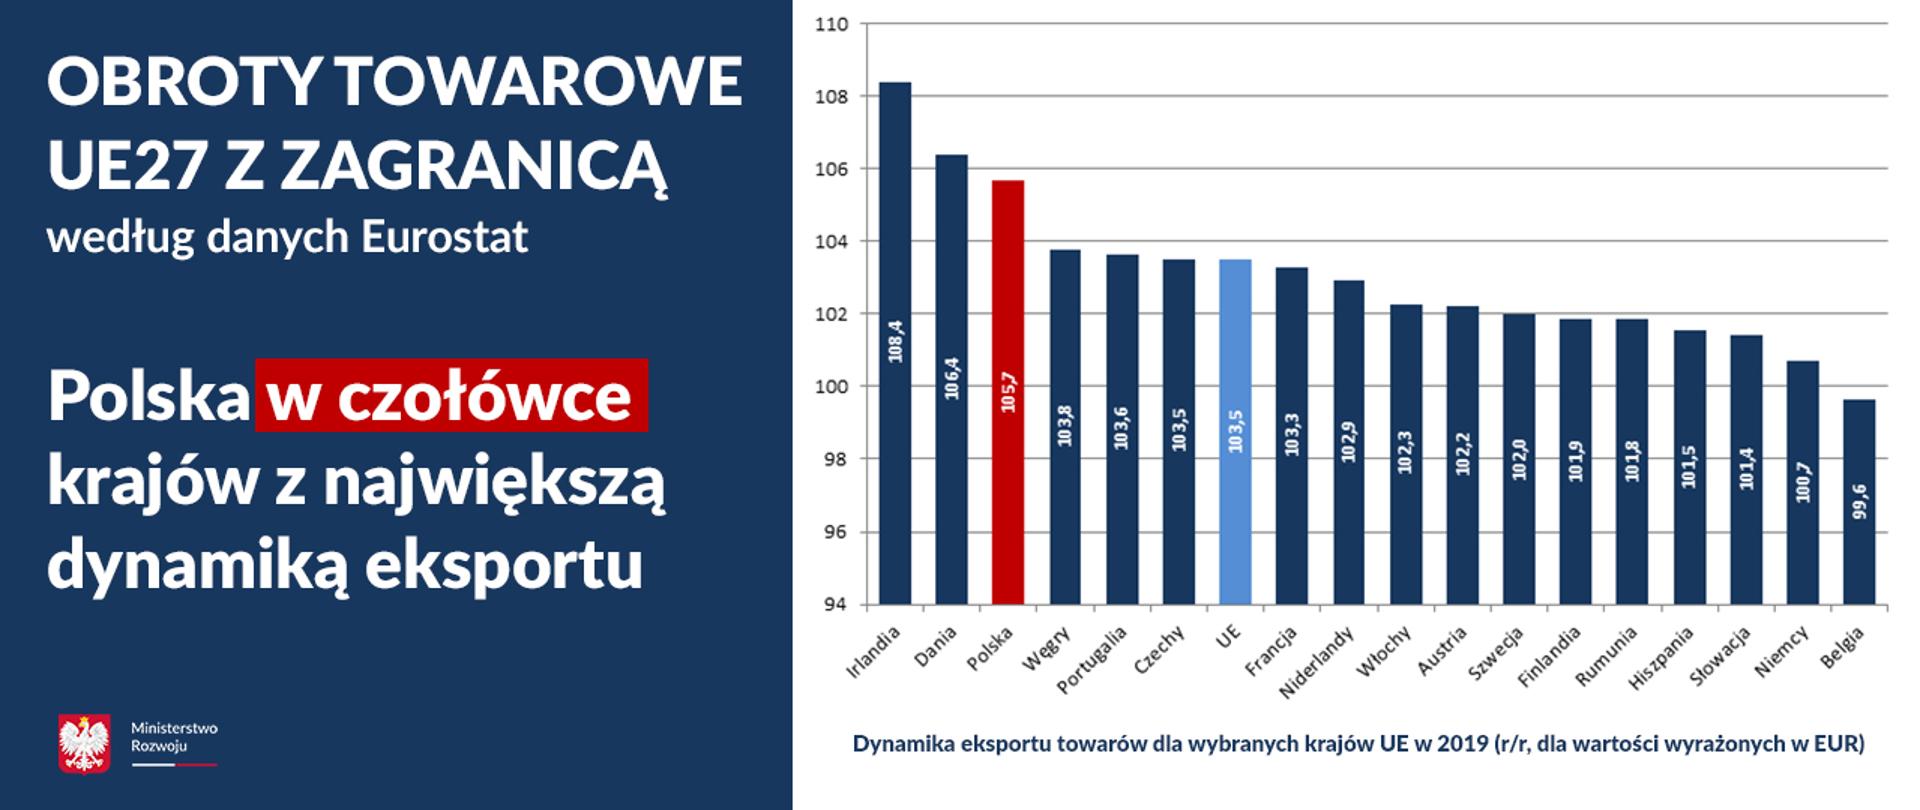 Grafika z wykresem, przedstawiającym dynamikę eksportu towarów dla wybranych krajów UE w 2019 (r/r, dla wartości wyrażonych w EUR). Wyróżnione są na niej Polska z wynikiem 105,7 na 3 miejscu i UE (103,5) na 7 miejscu.